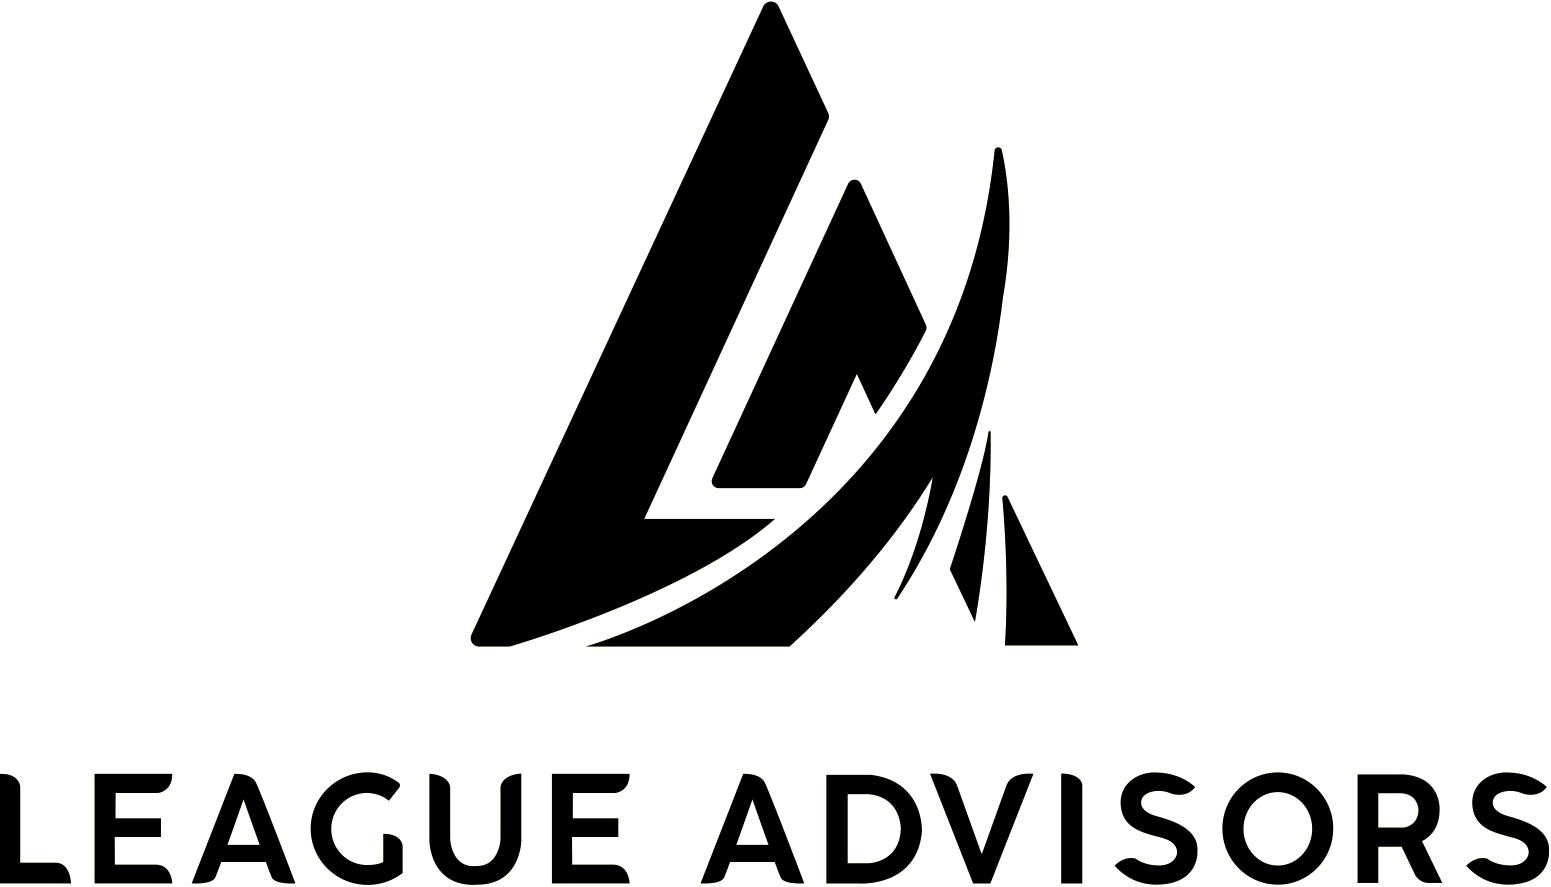 League Advisors logo